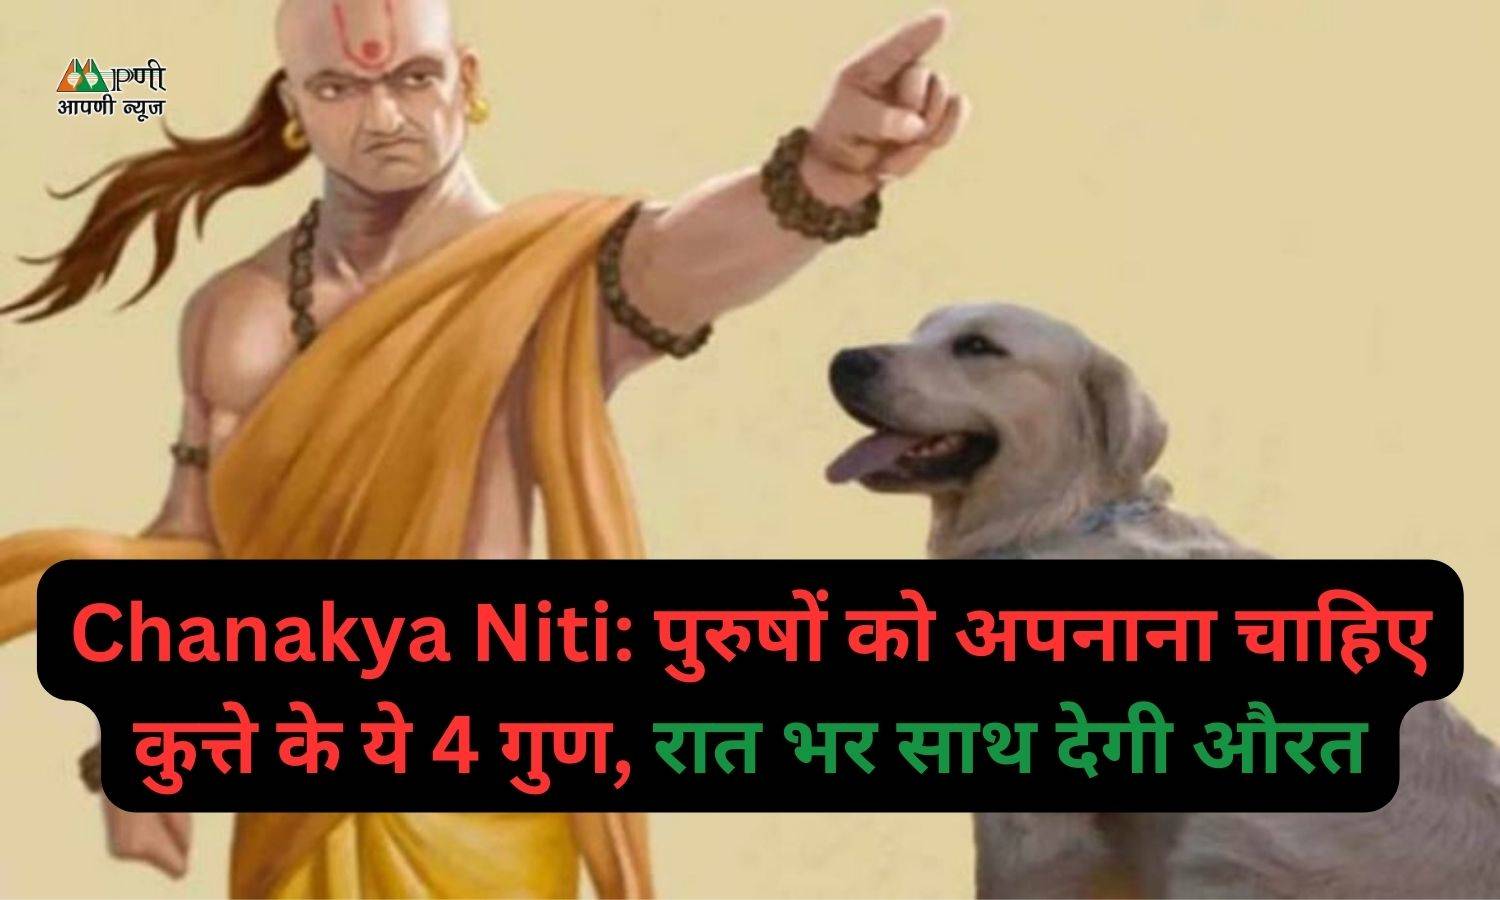 Chanakya Niti: पुरुषों को अपनाना चाहिए कुत्ते के ये 4 गुण, रात भर साथ देगी औरत